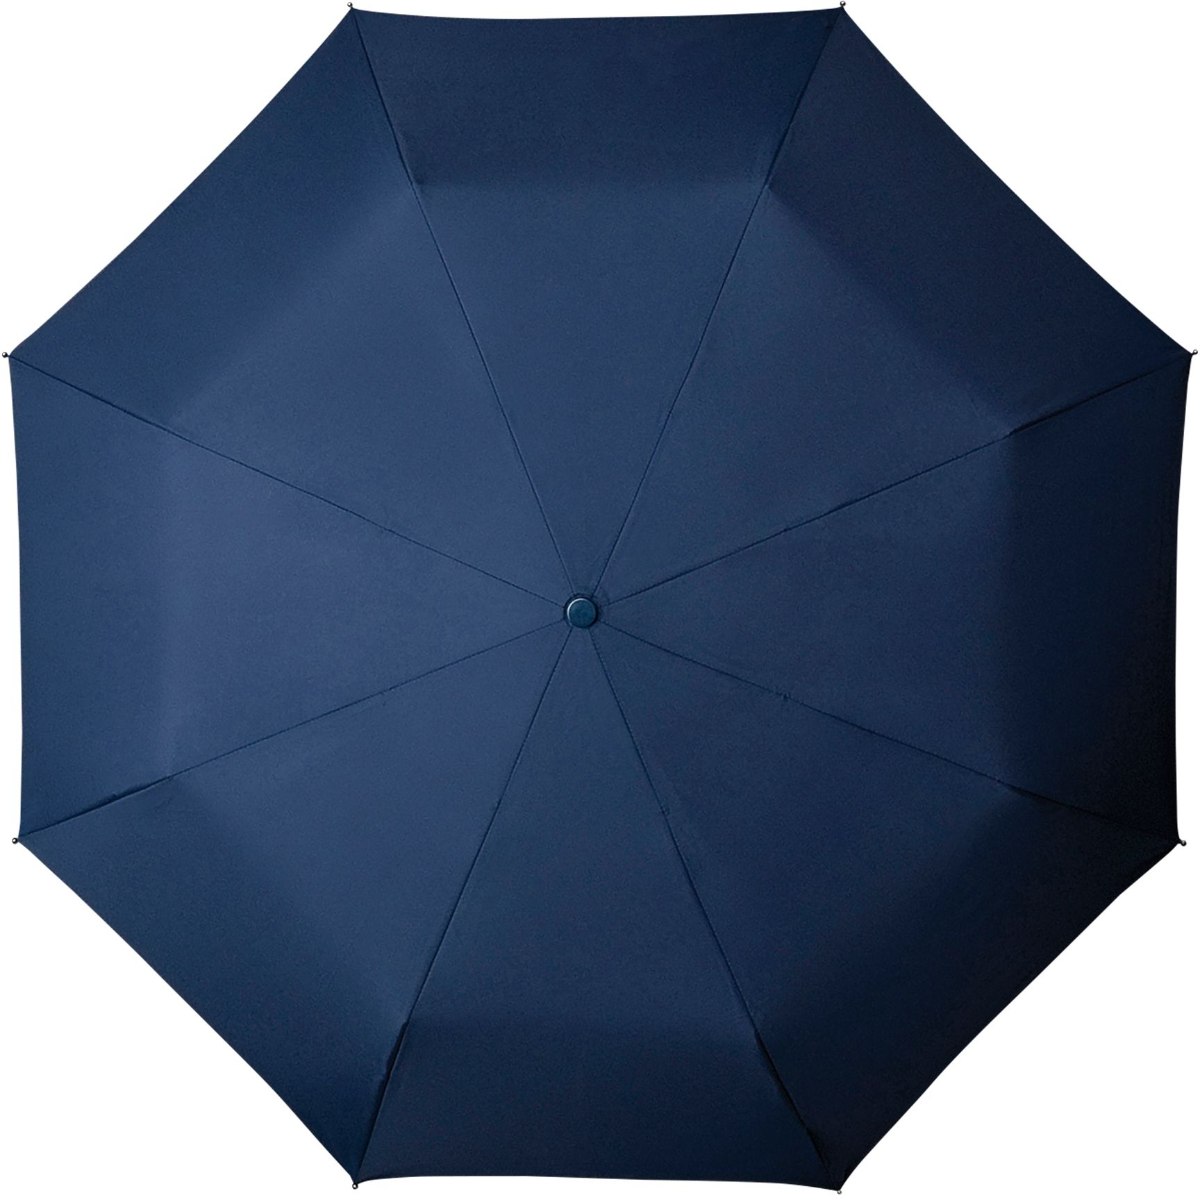 מטריה אוטומטית איכותית 100ס"מ של המותג ההולנדי המוביל בעולם Impliva MiniMax- צבע נייבי